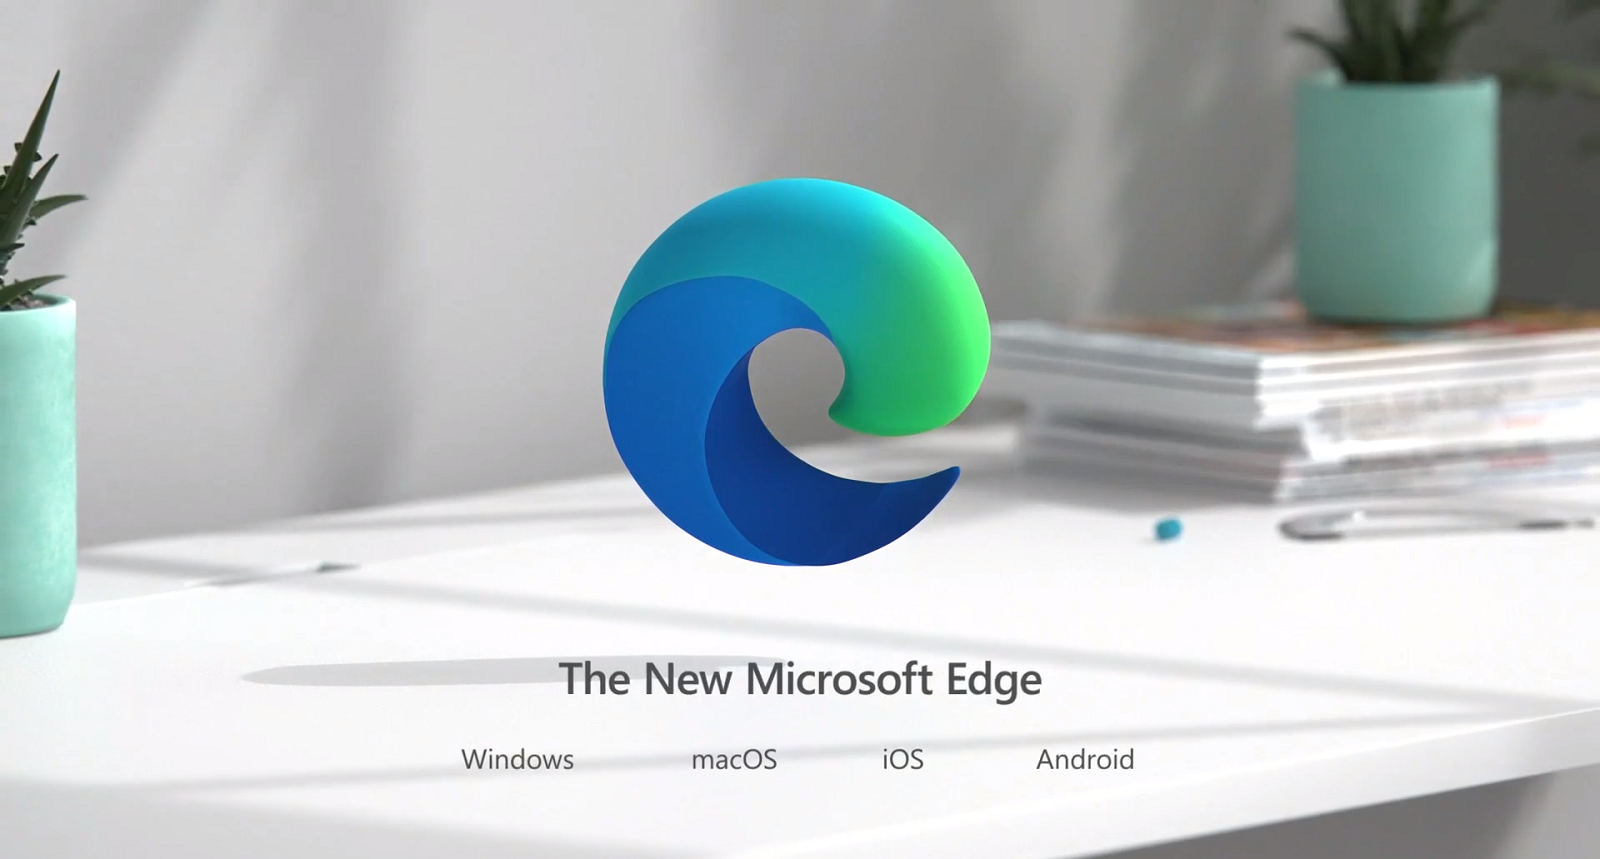 Καλύτερες επιδόσεις υπόσχεται ο Microsoft Edge με το Performance Mode